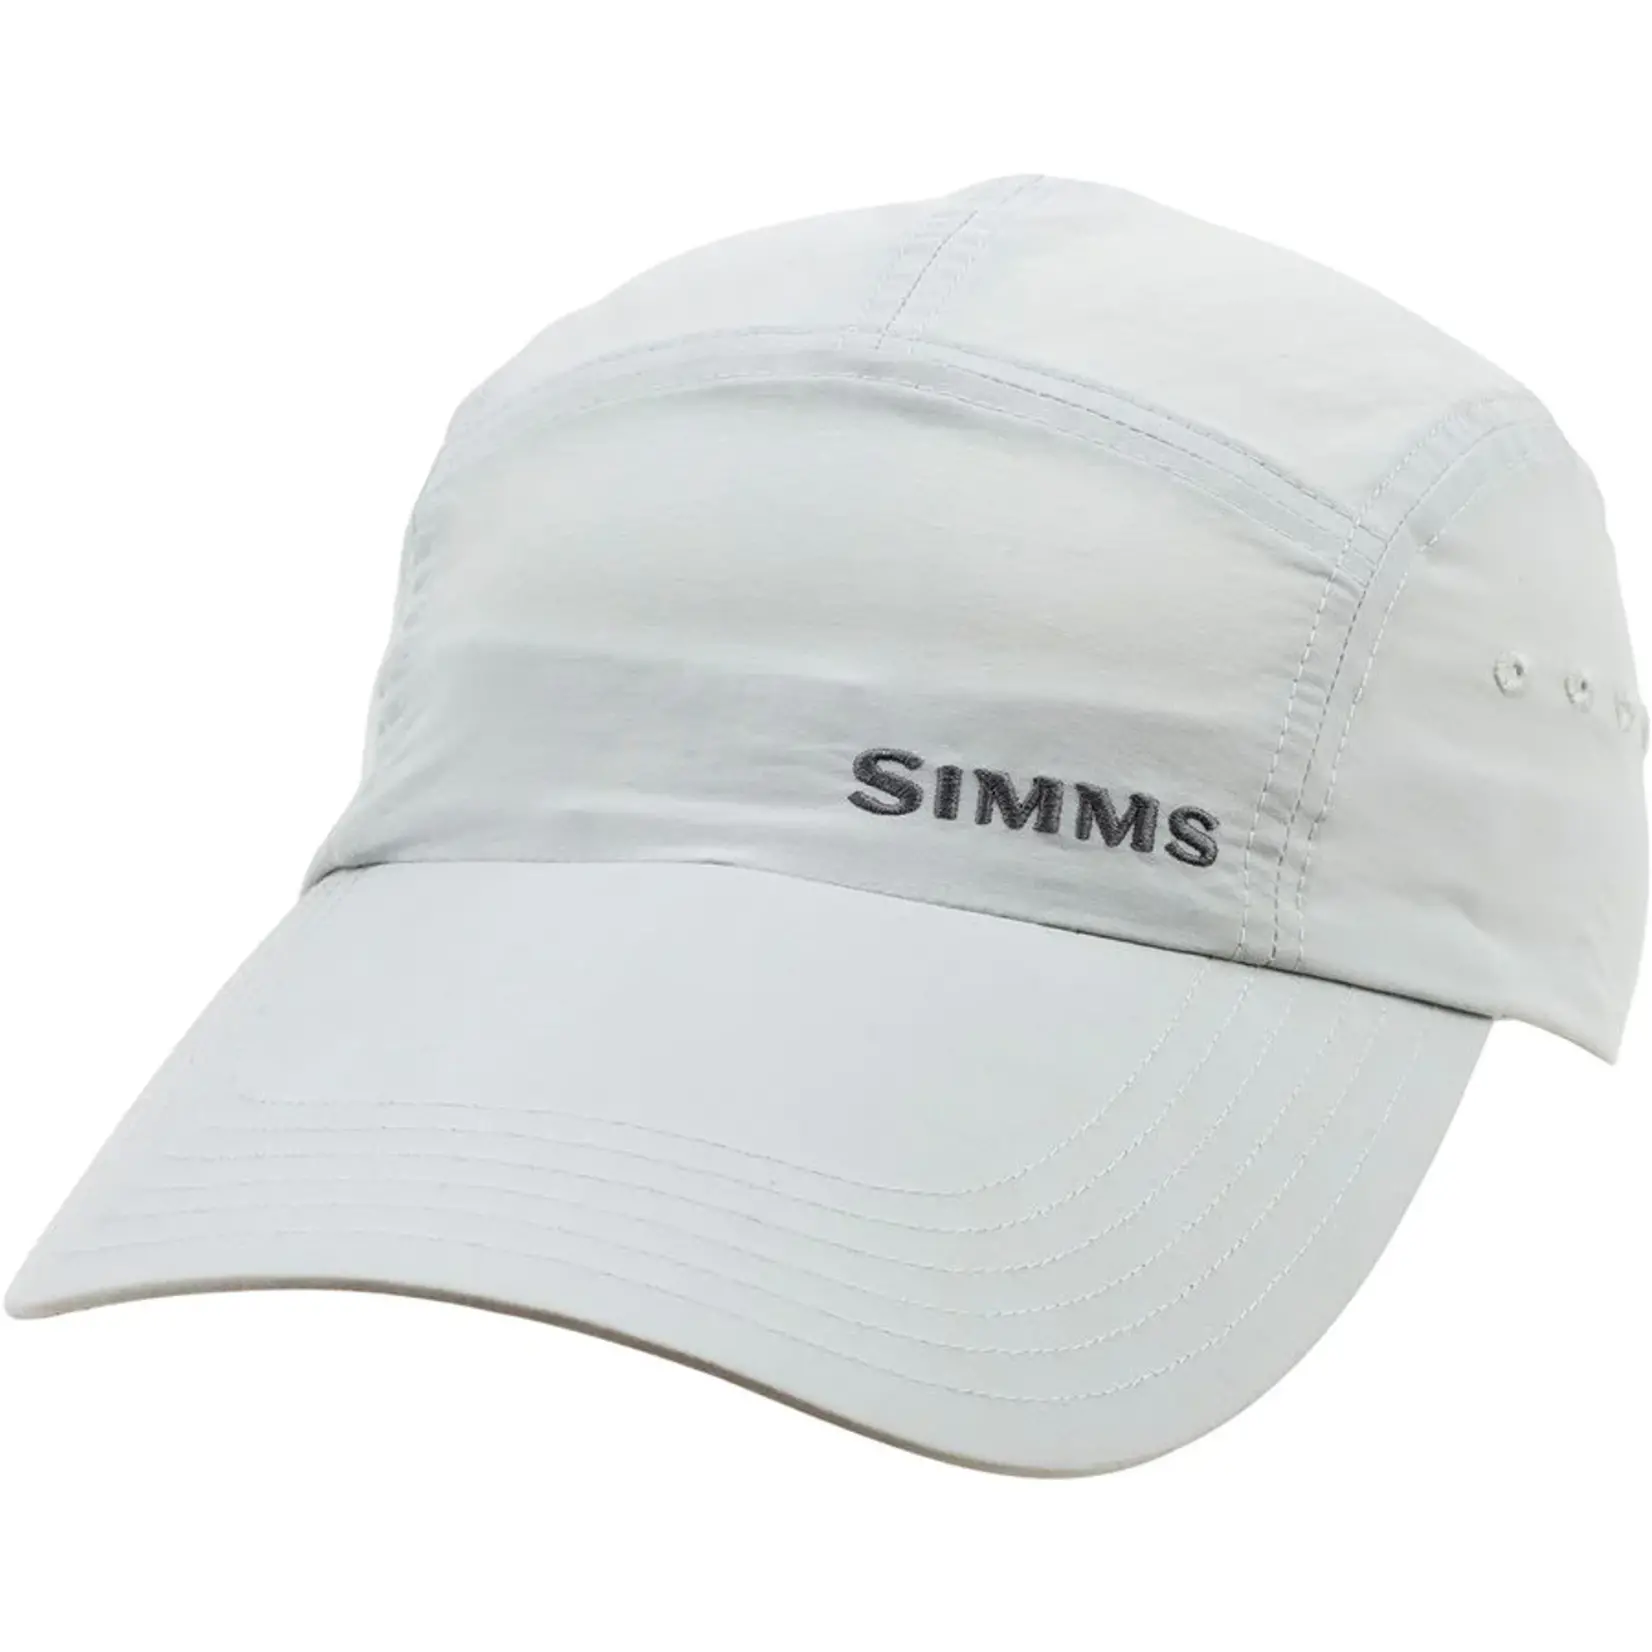 Simms Flats Cap - Long Bill -